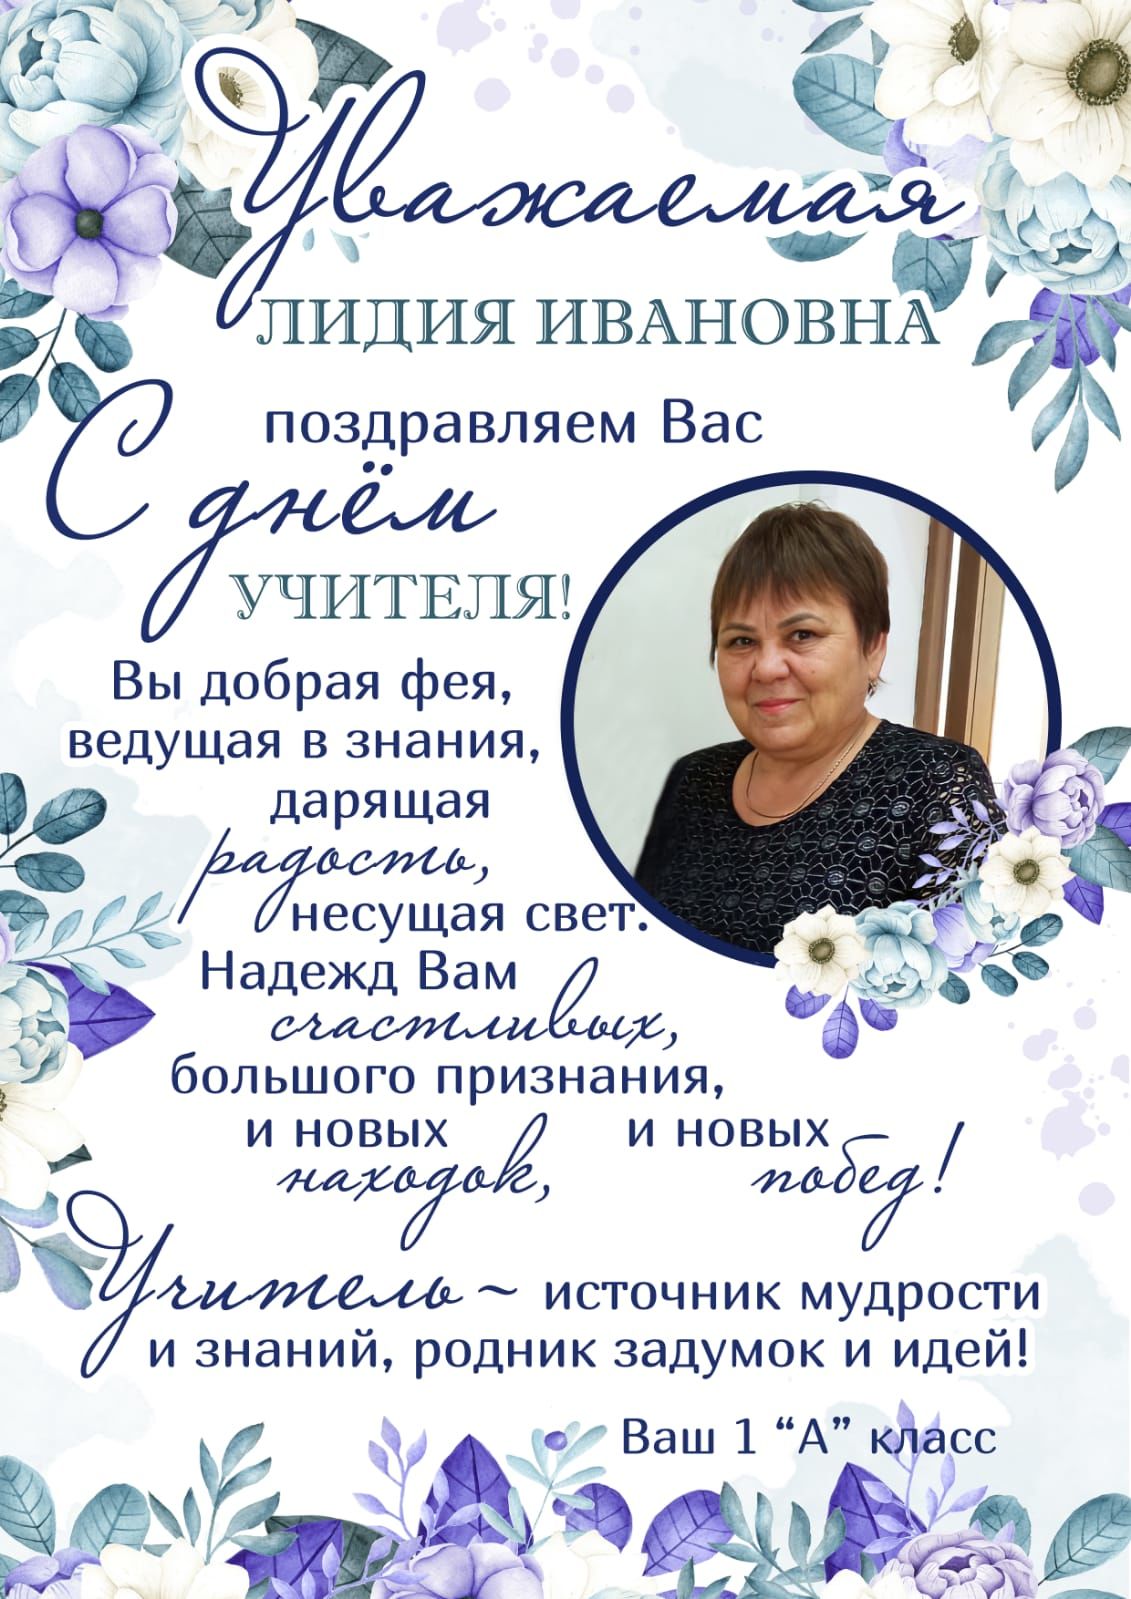 Ученики 1 А класса поздравляют любимого учителя Лидию Ивановну с праздником!